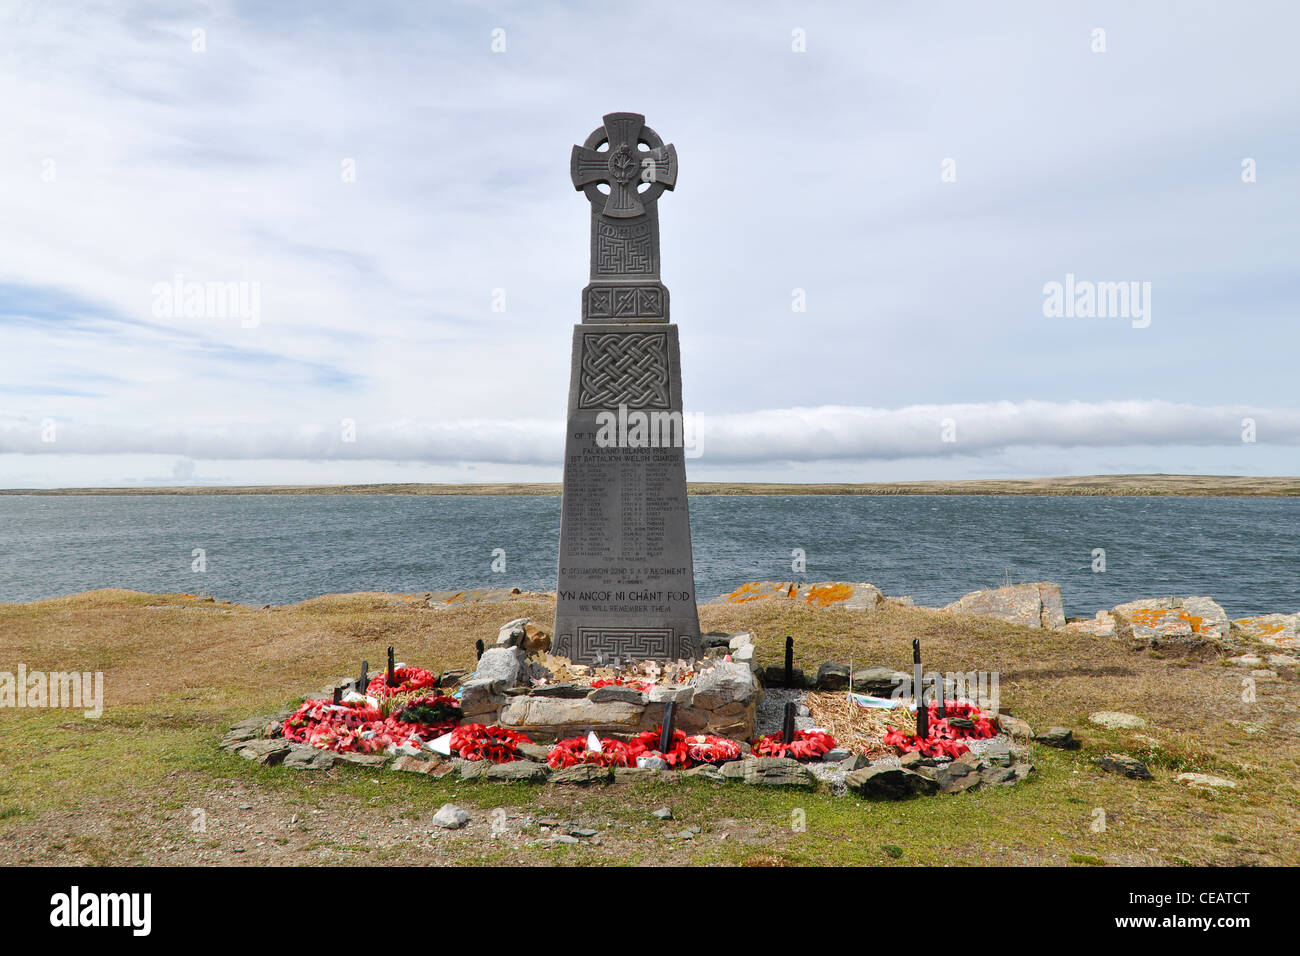 Welsh Guards memorial à Bluff Cove Îles Falkland. Banque D'Images